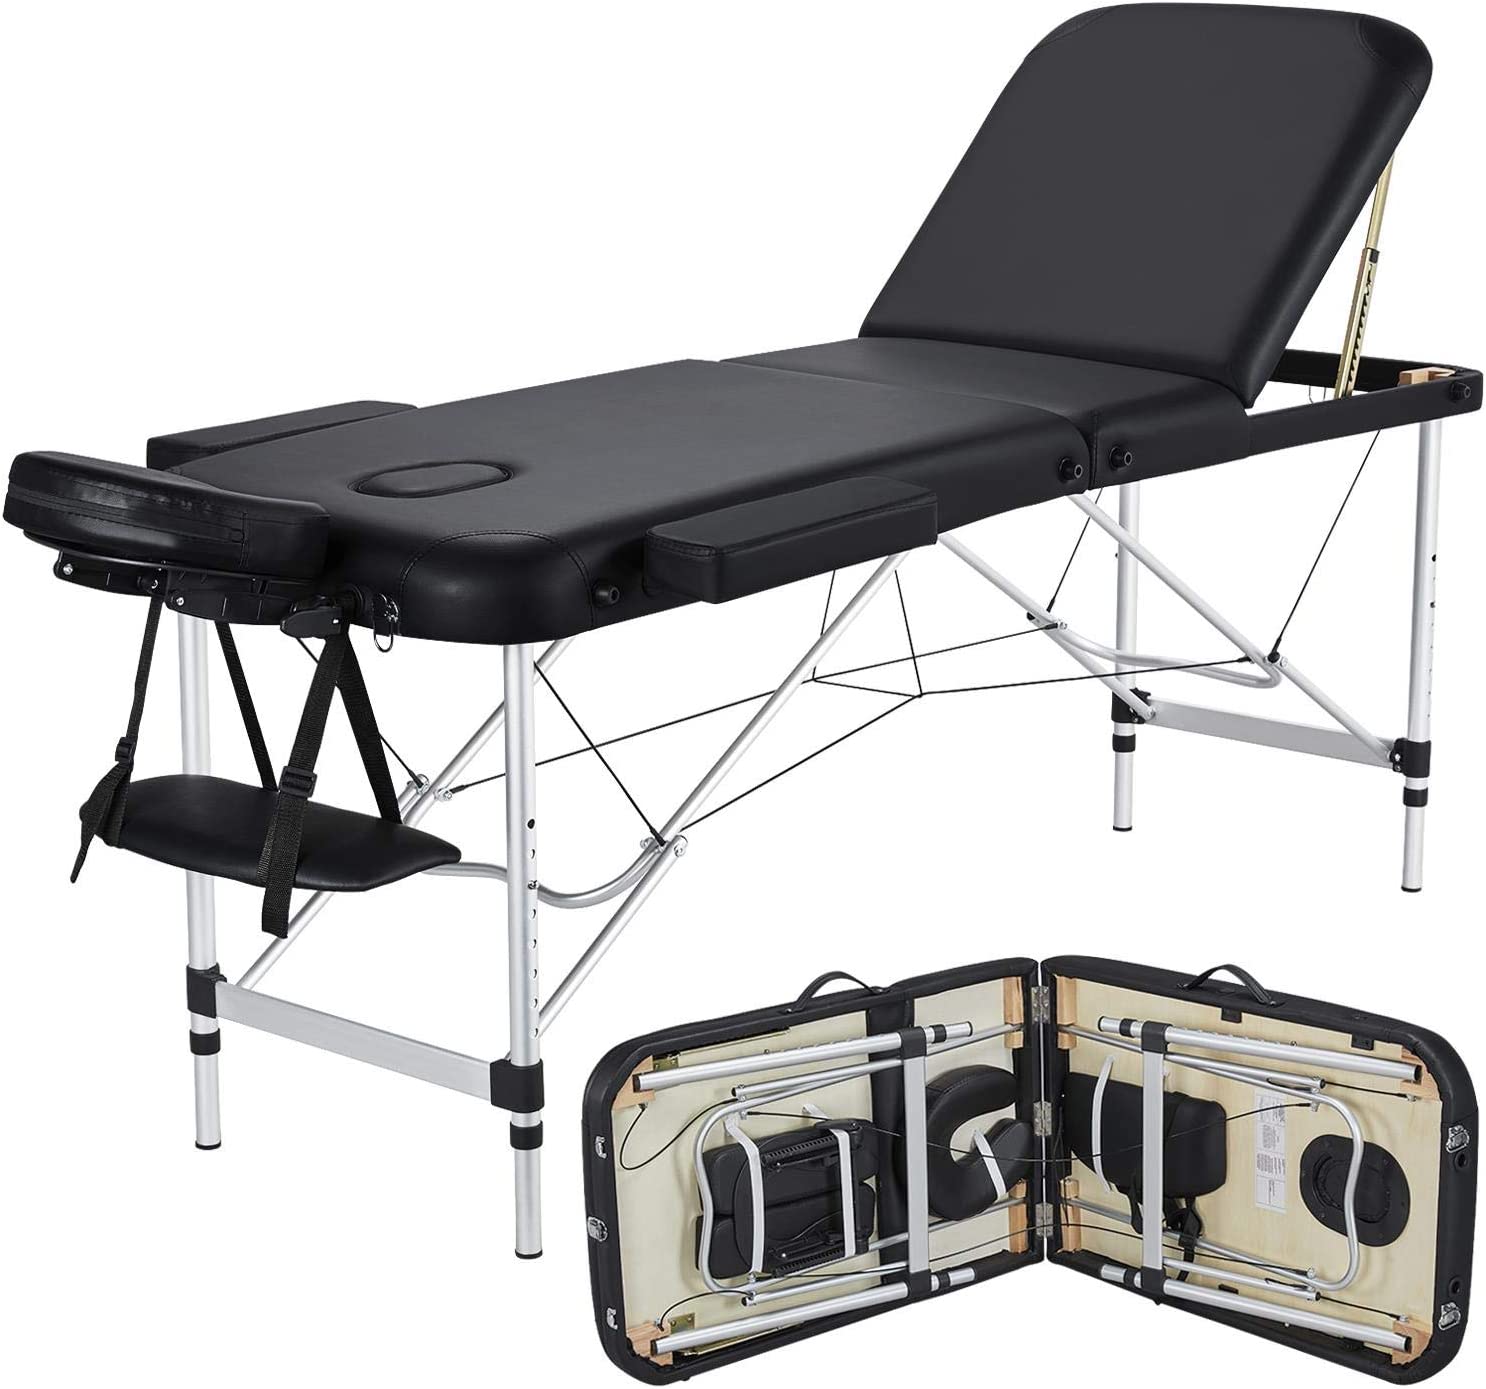  6. Yaheetech Folding Massage Table 